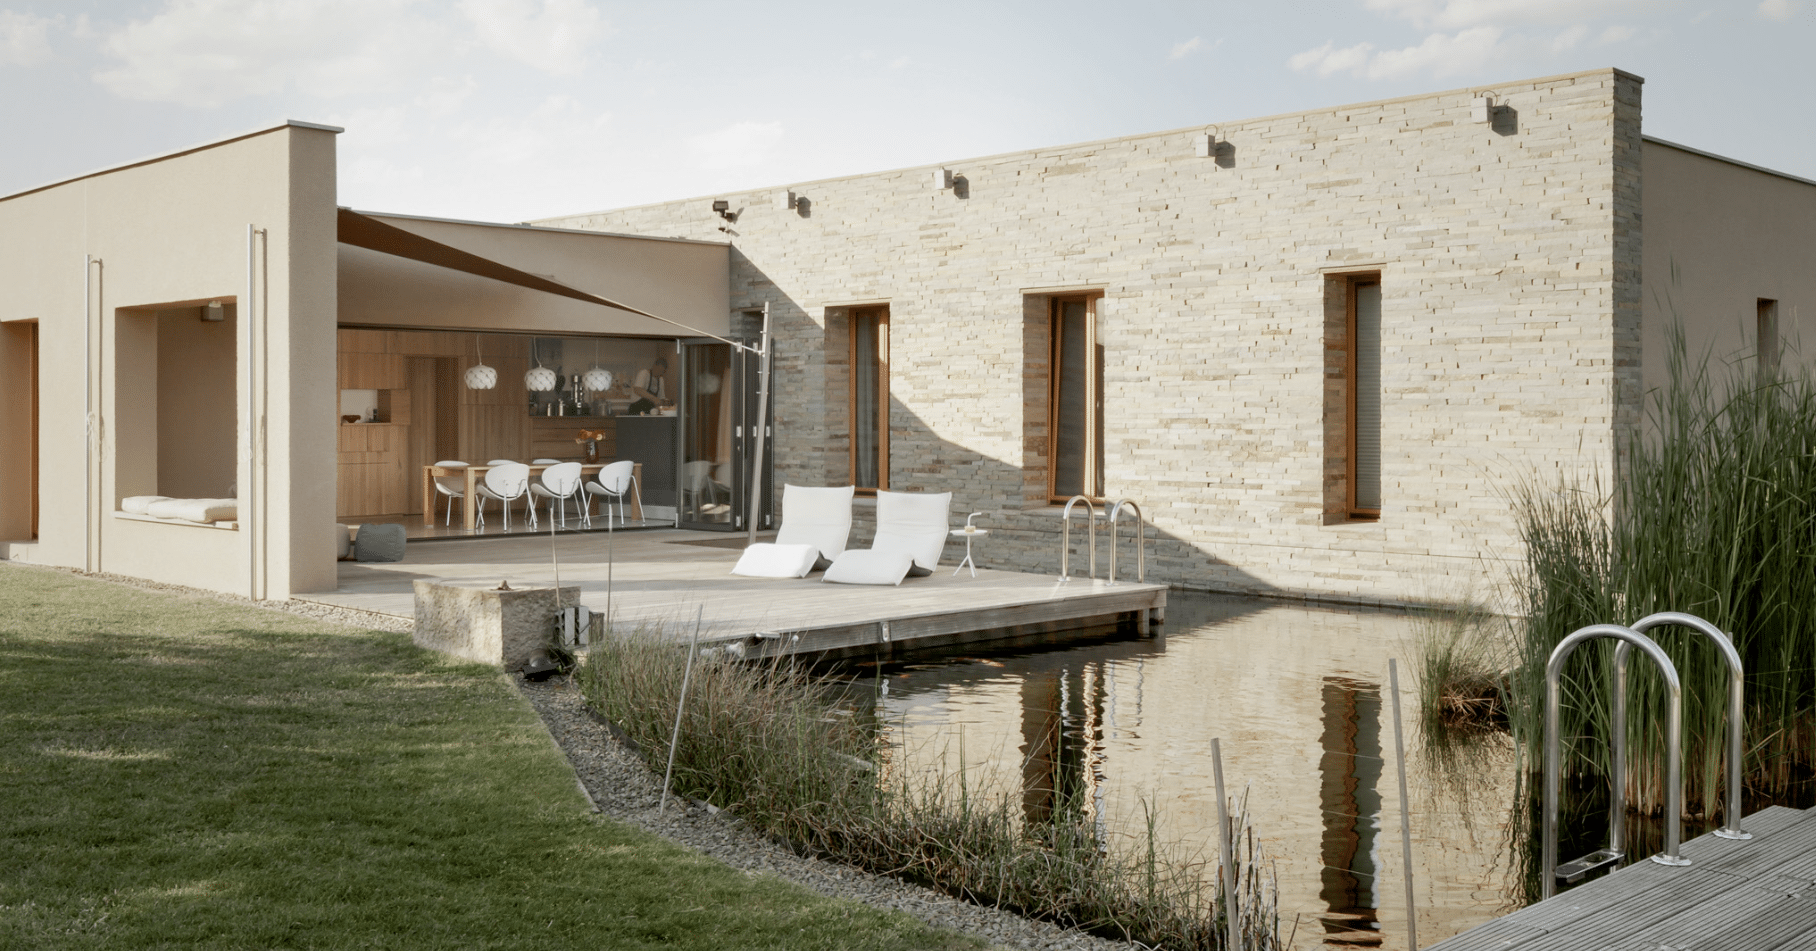 SOLARLUX präsentiert ein hoch modernes Einfamilienhaus in beige mit Naturpool, Terrasse mit Outdoormöbeln und Glasschiebetür.